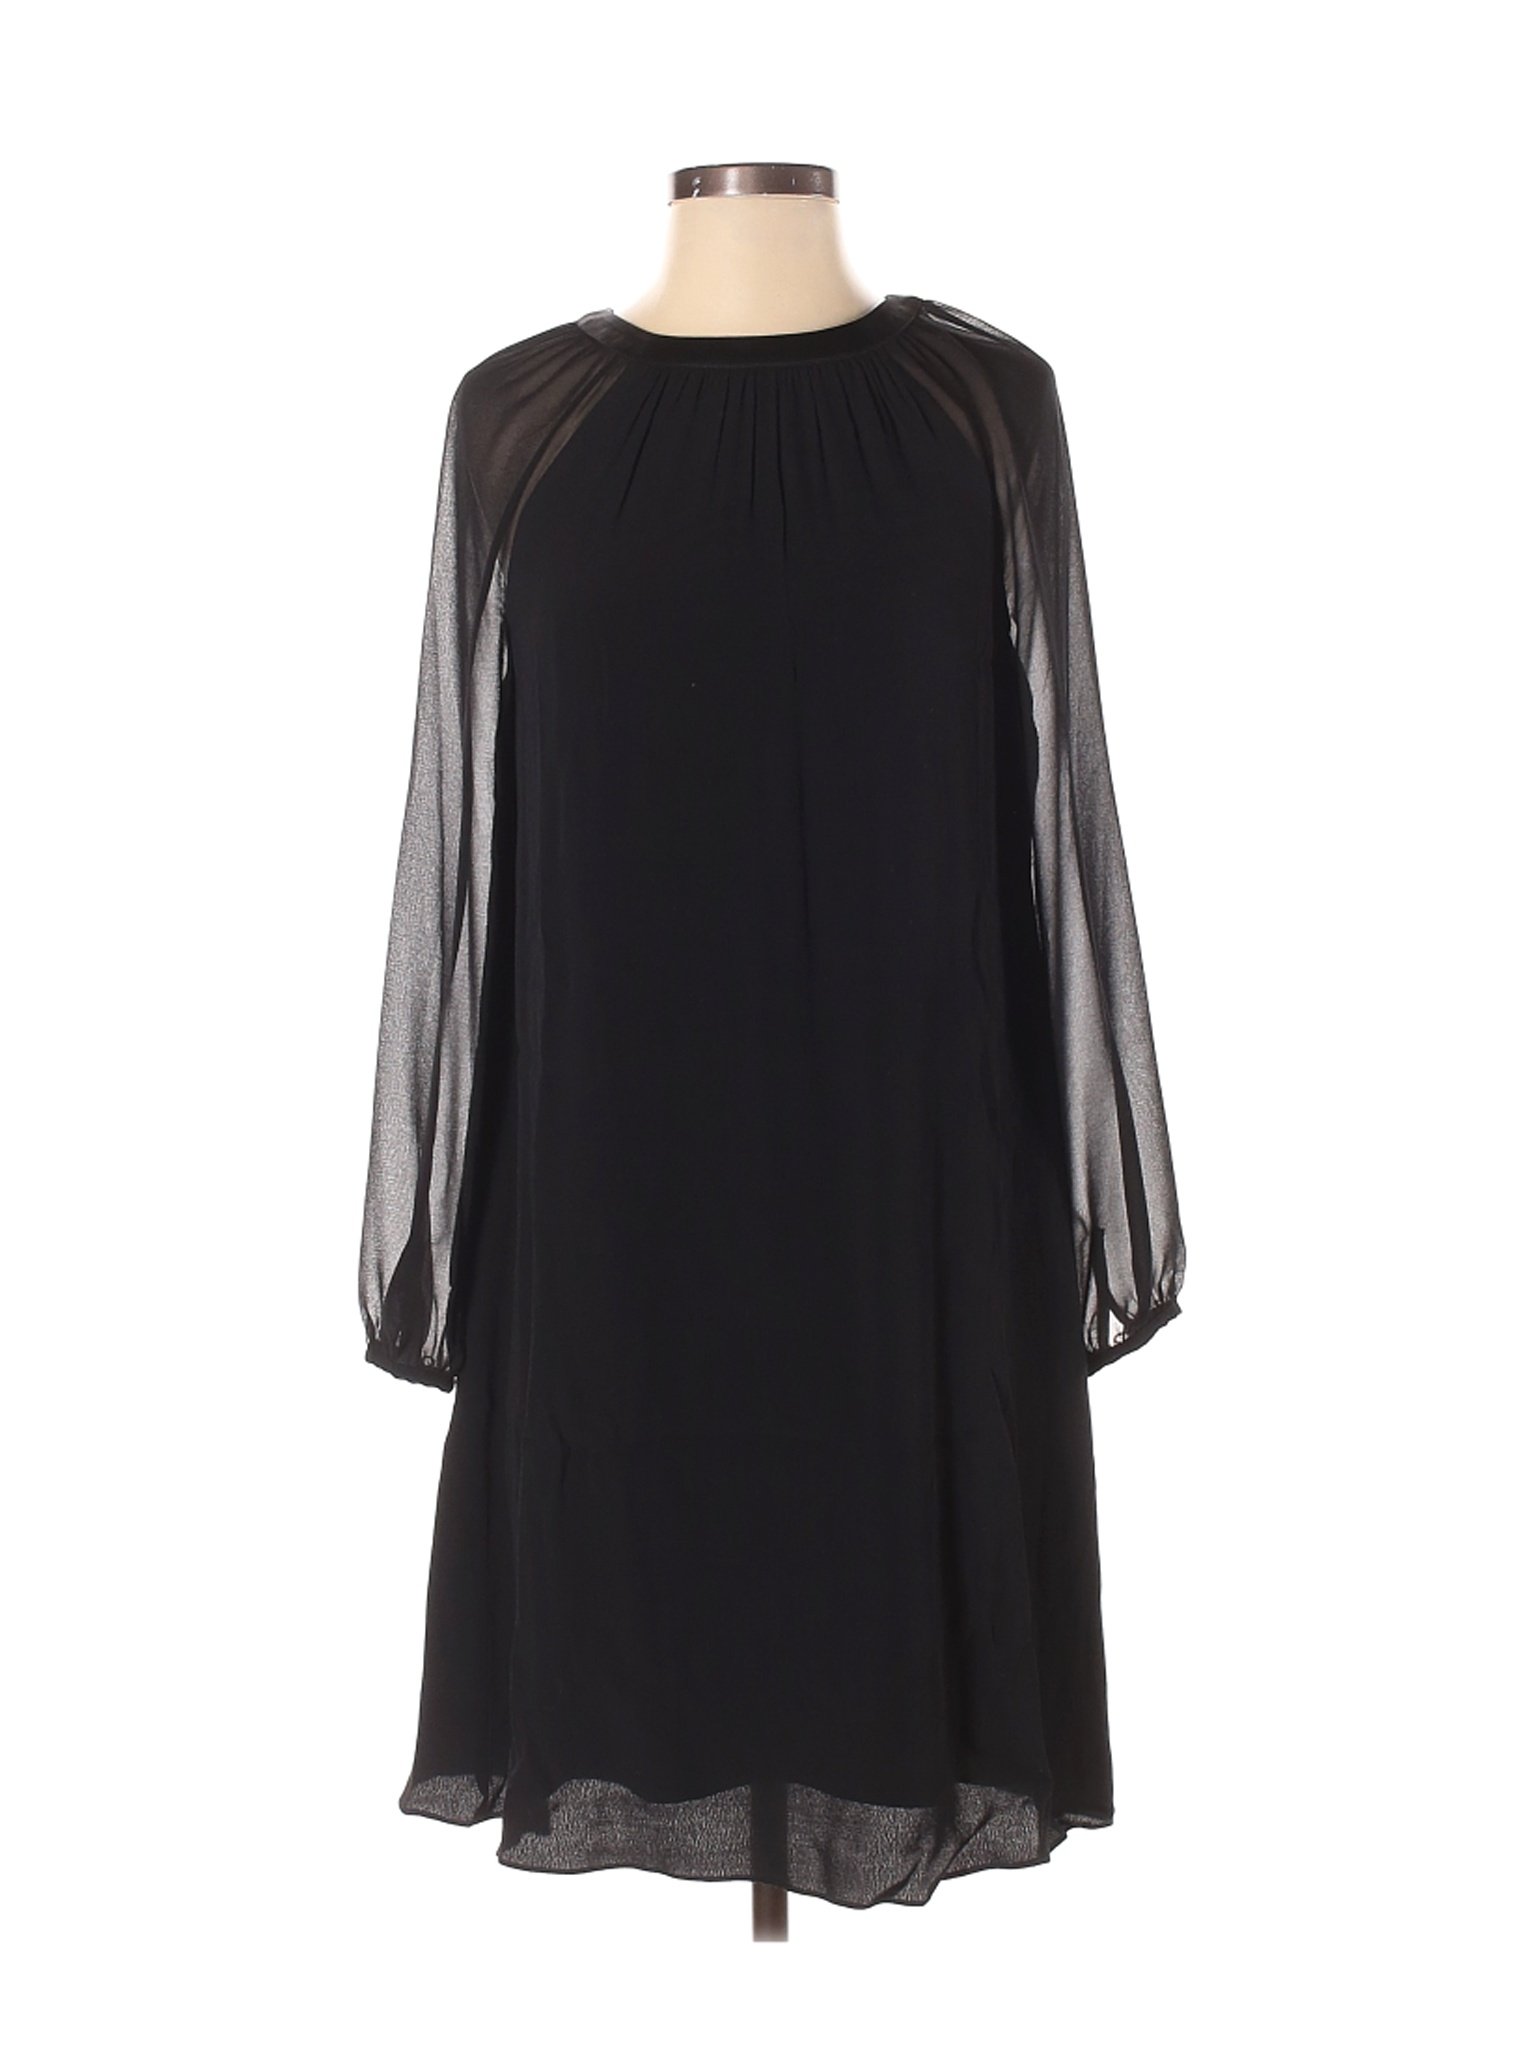 Boden Women Black Casual Dress 4 | eBay